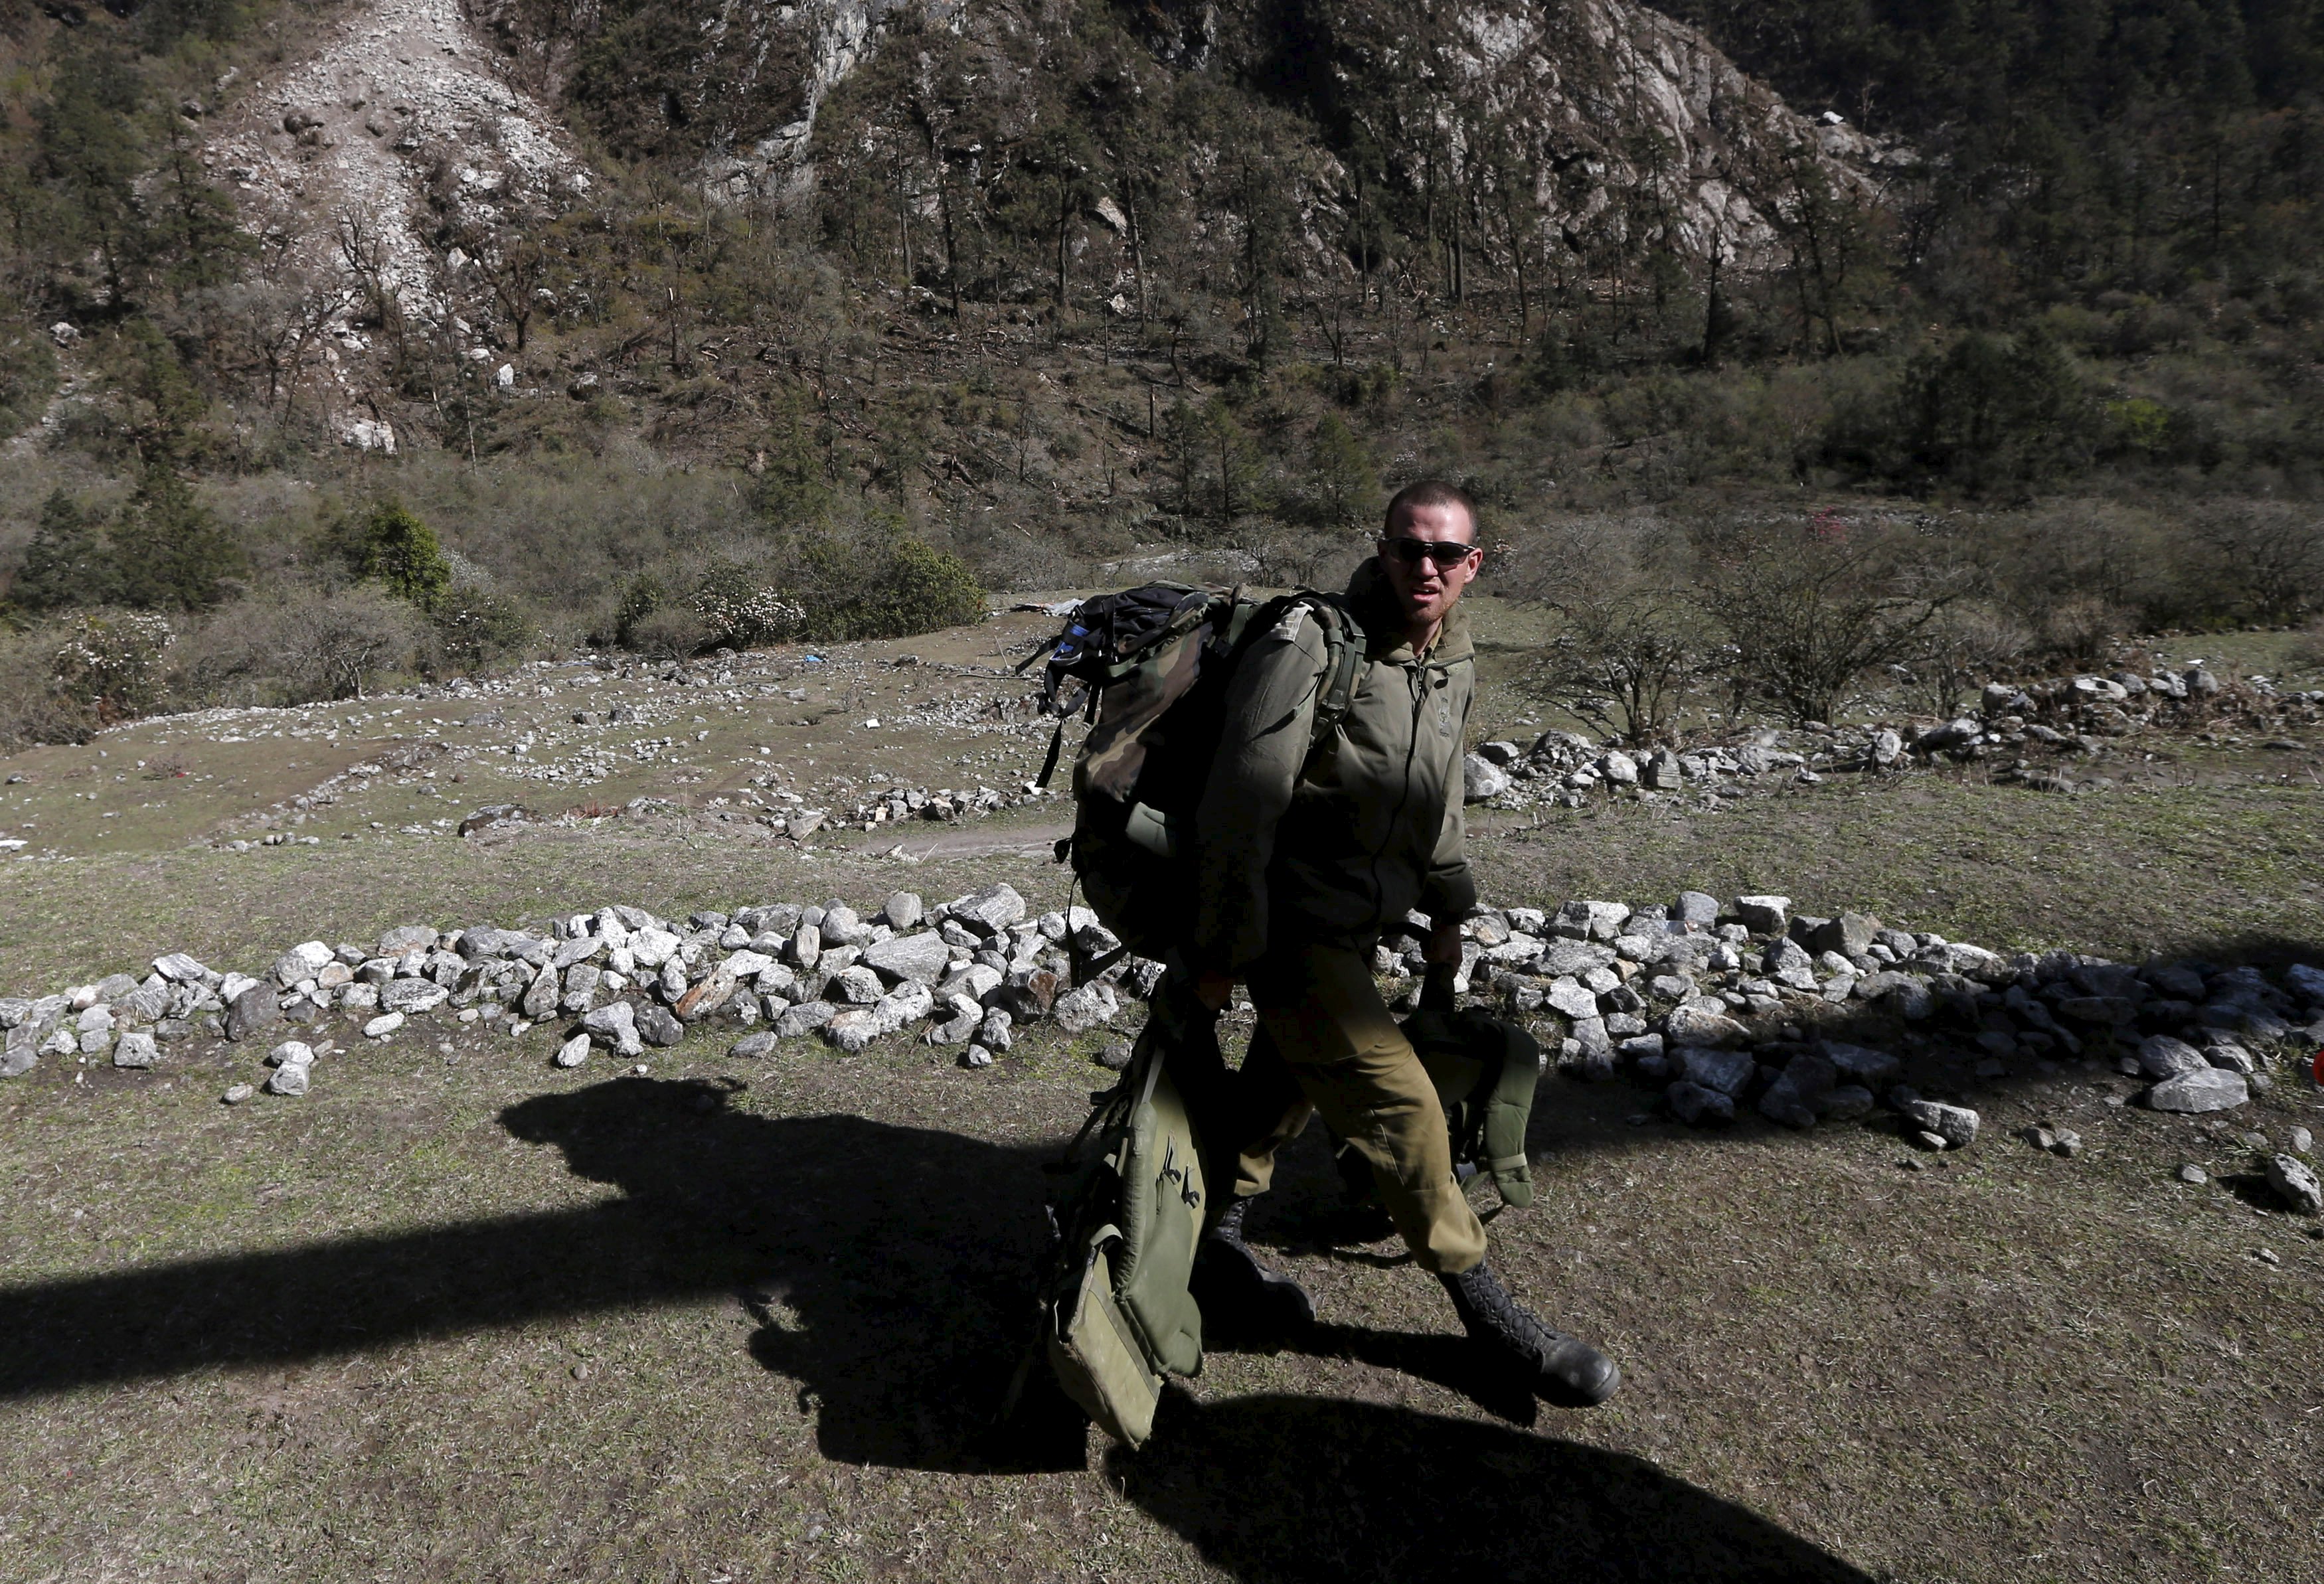 About 100 bodies found in Nepal trekking village